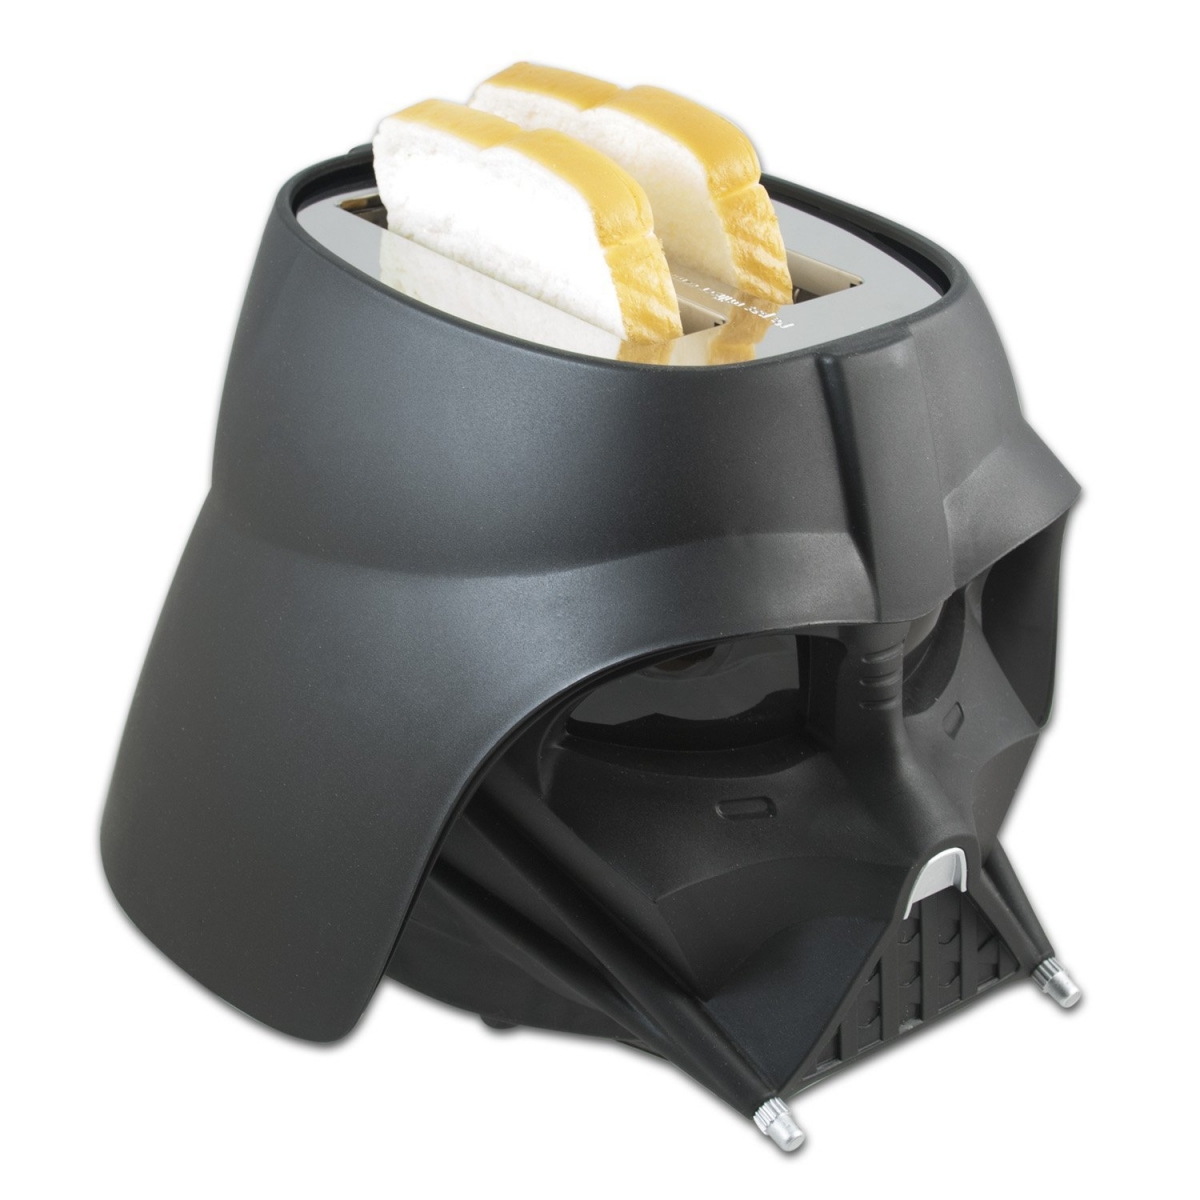 modèle 3D de Grille-pain Star Wars Dark Vador par Williams Sonoma